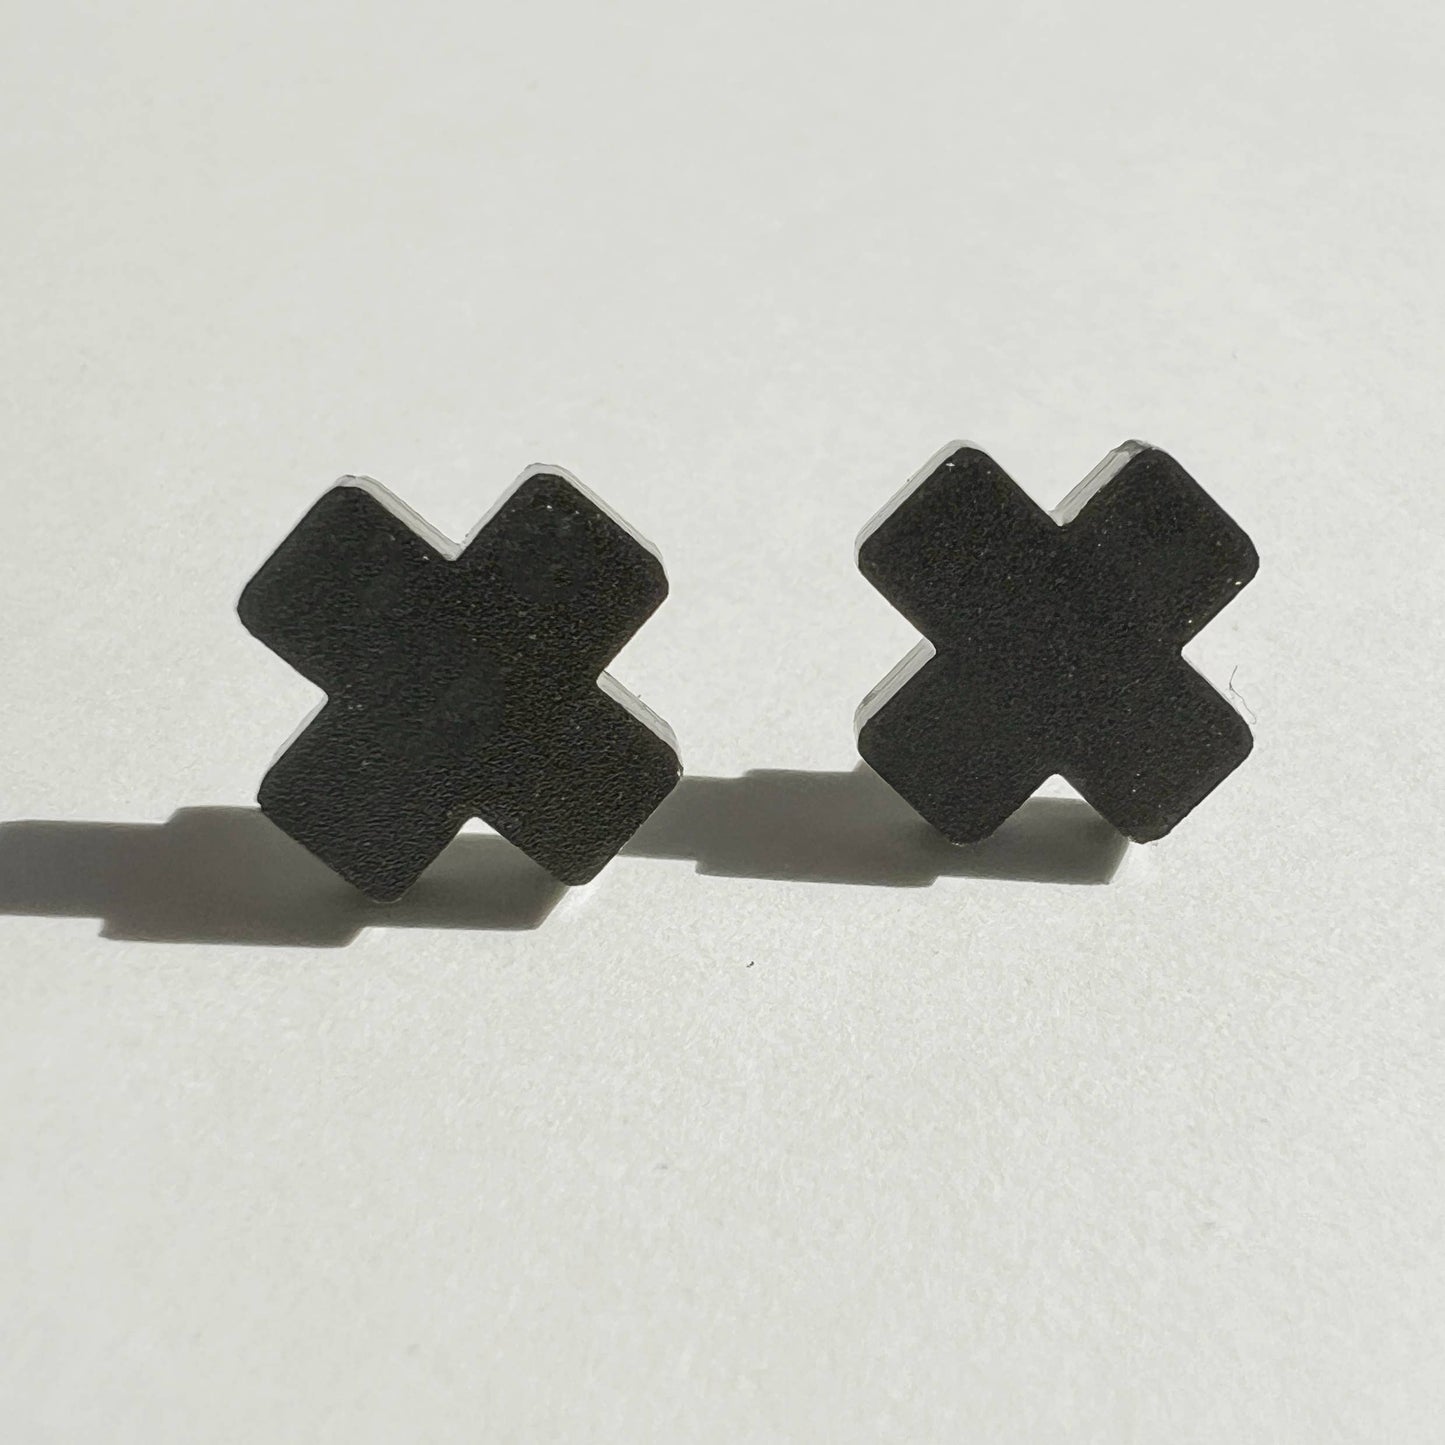 Black Cross Stud Earrings - Small Cross Earrings, Minimalist